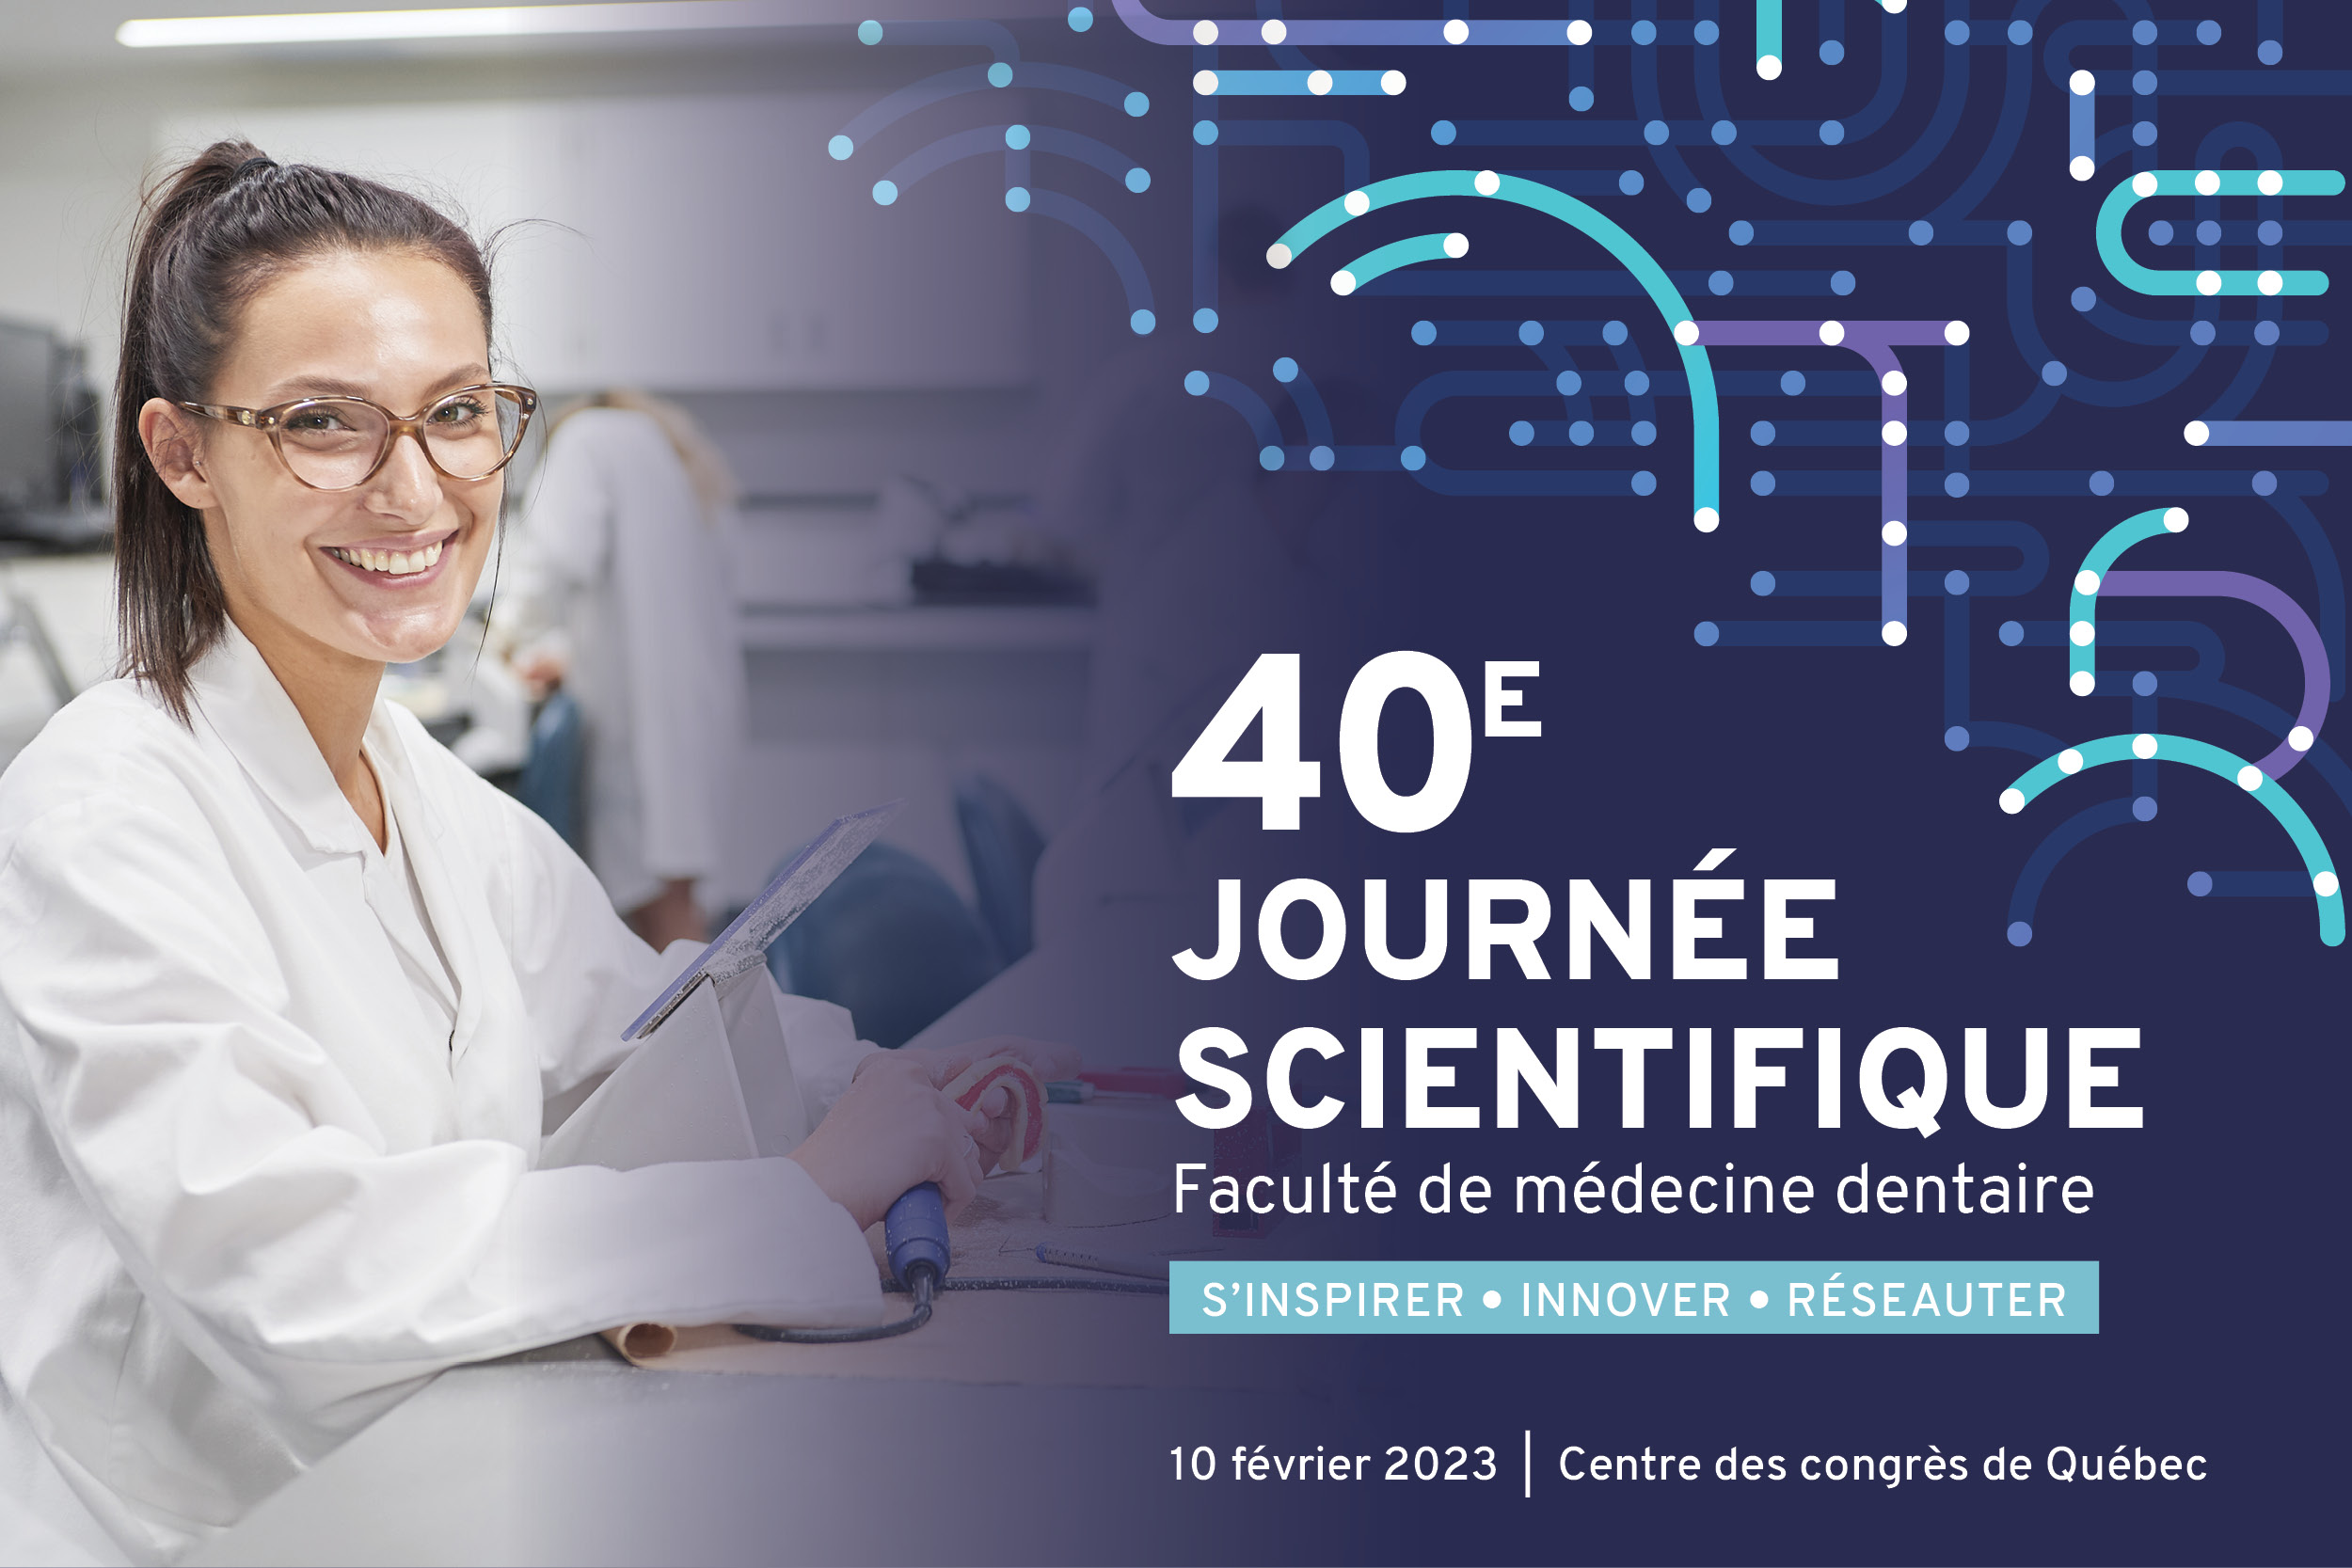 40e Journée scientifique de la FMD, 10 février 2023, Centre des congrès de Québec